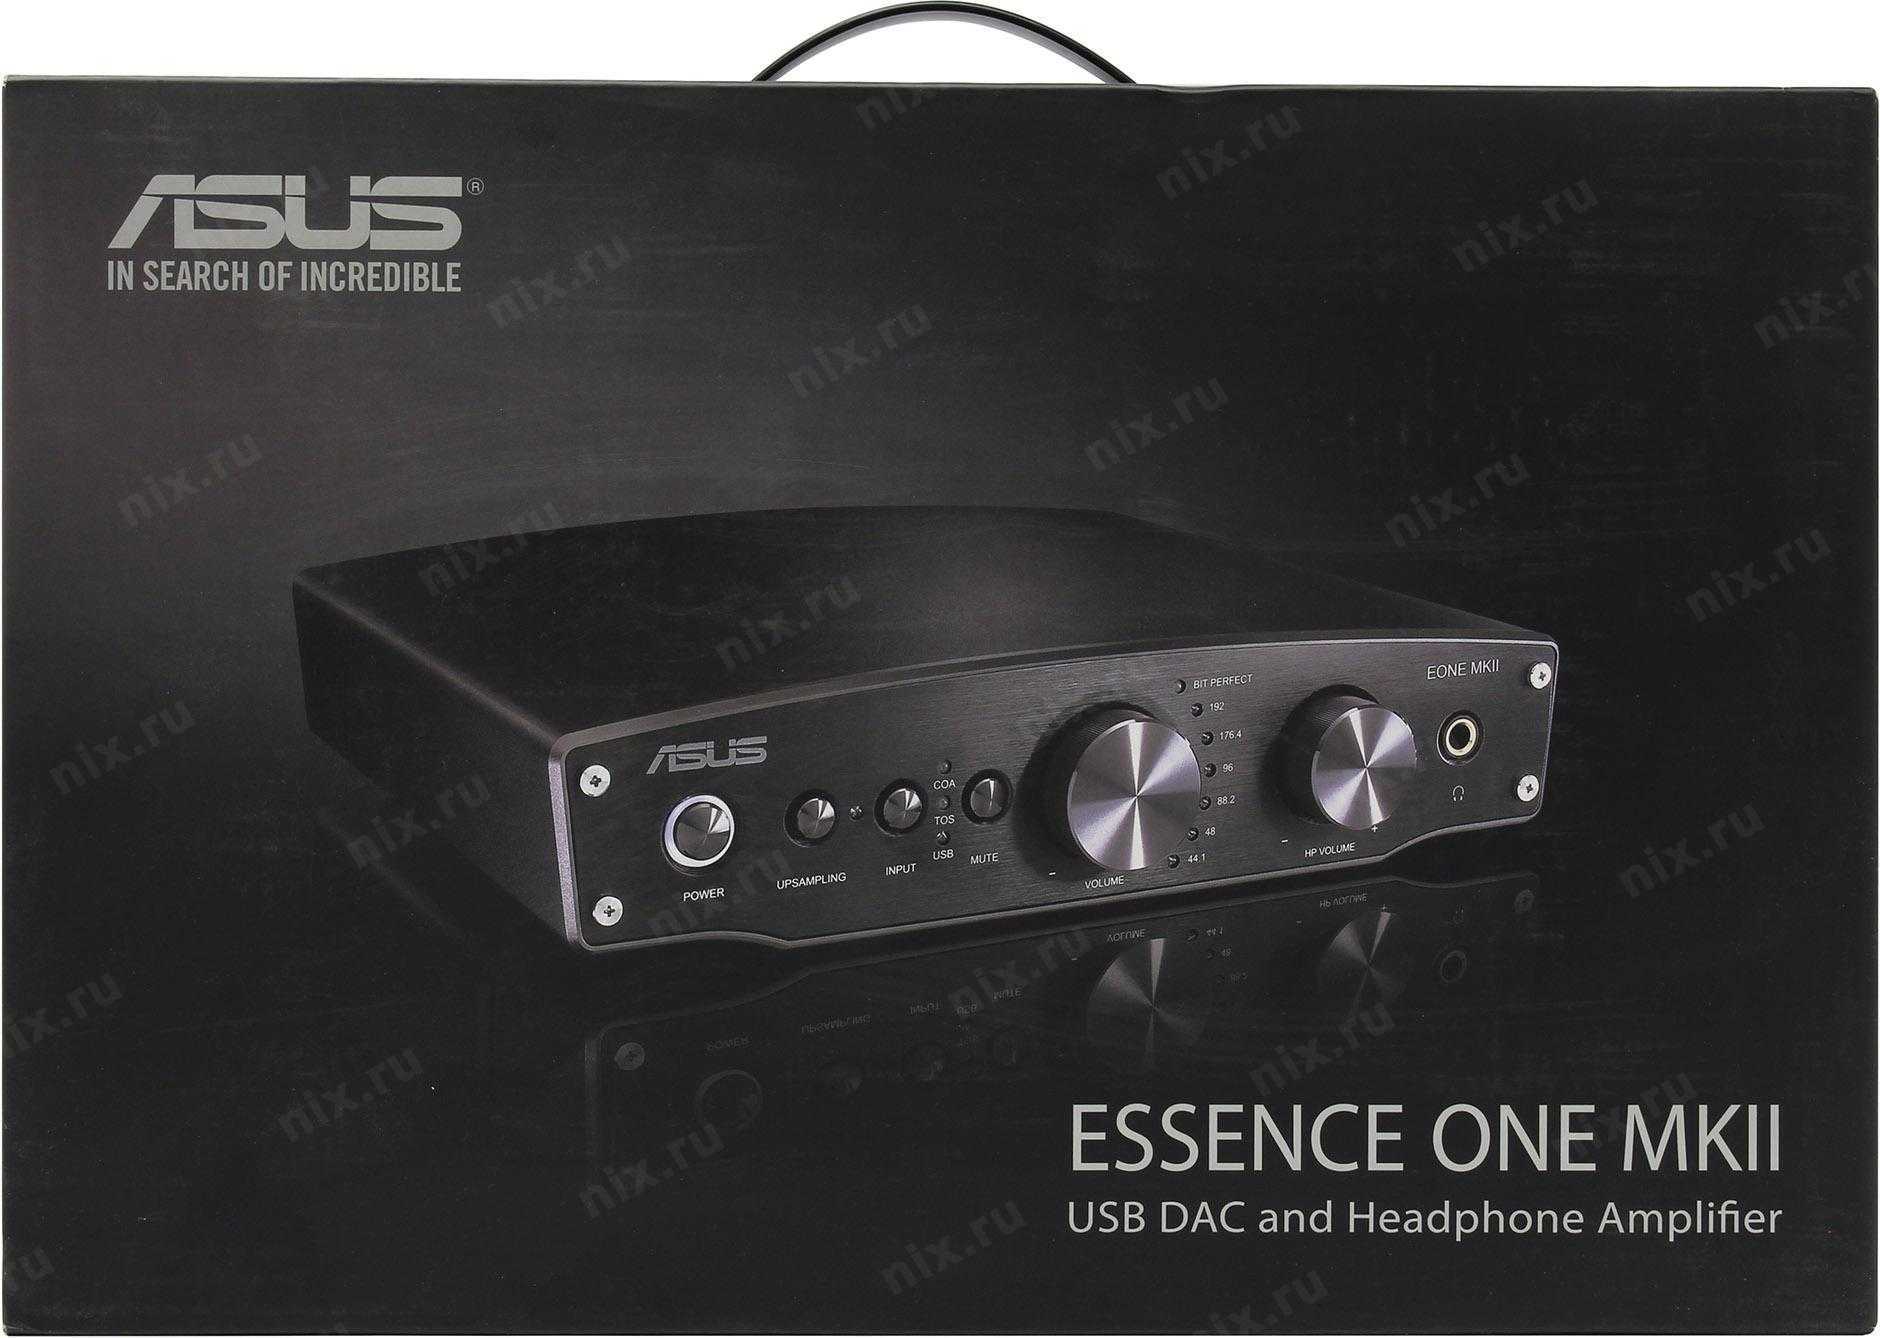 Операционный усилитель MUSE 02 является двойным биполярным, созданным специально для высокого качества звука MUSE02 операционный усилитель, оптимизирован для высококачественной High-End аудиофильской аппаратуры и профессиональных аудио устройств в лучших